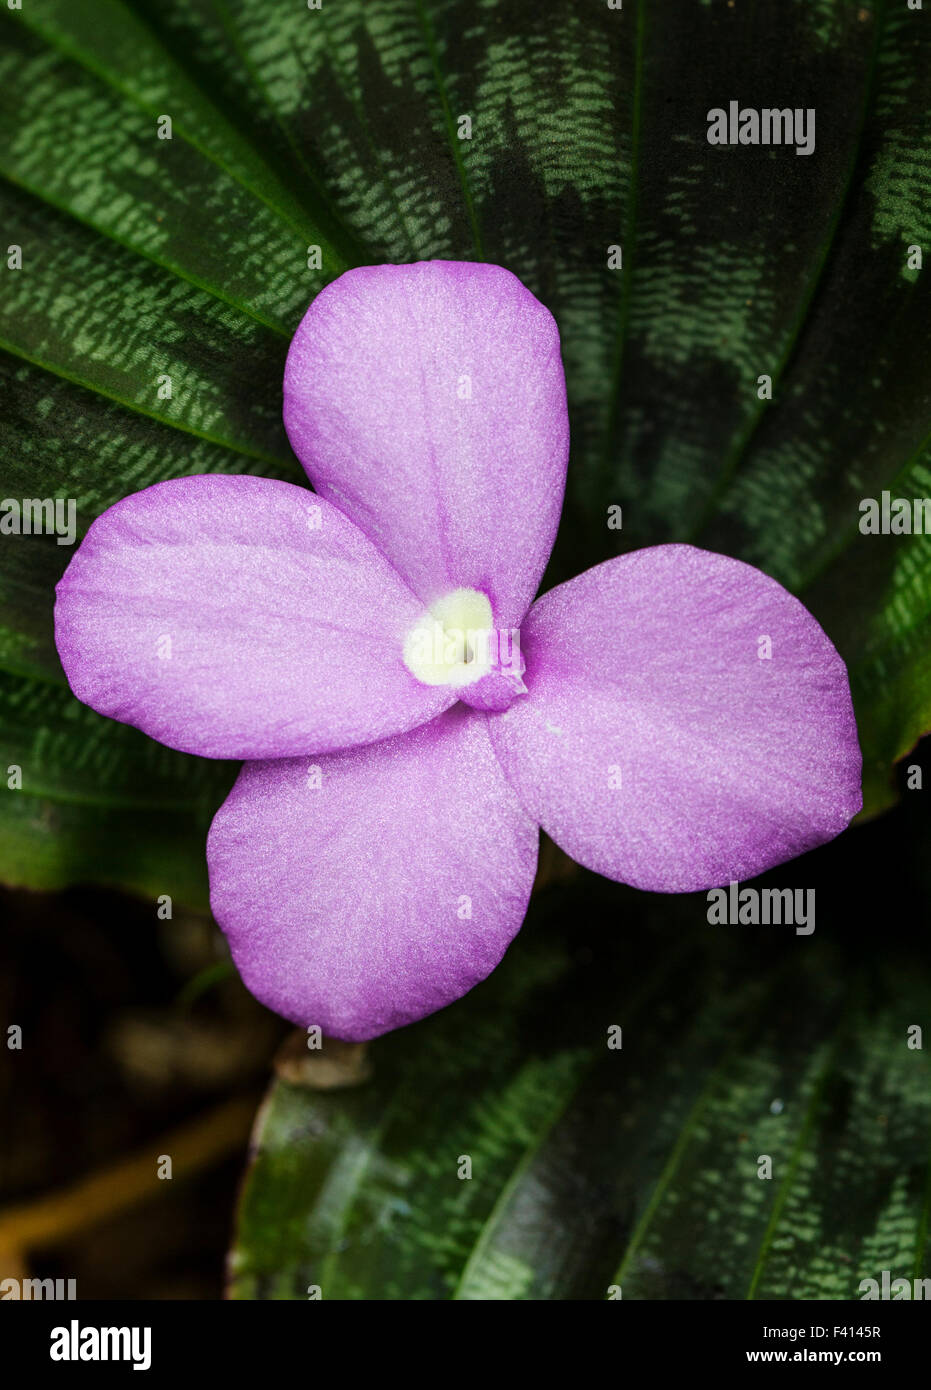 Rubis birman ; Zingiber sp. ; Zingiberaceae ; Hawaii Tropical Botanical Garden Nature Preserve ; Big Island, Hawaii, USA Banque D'Images